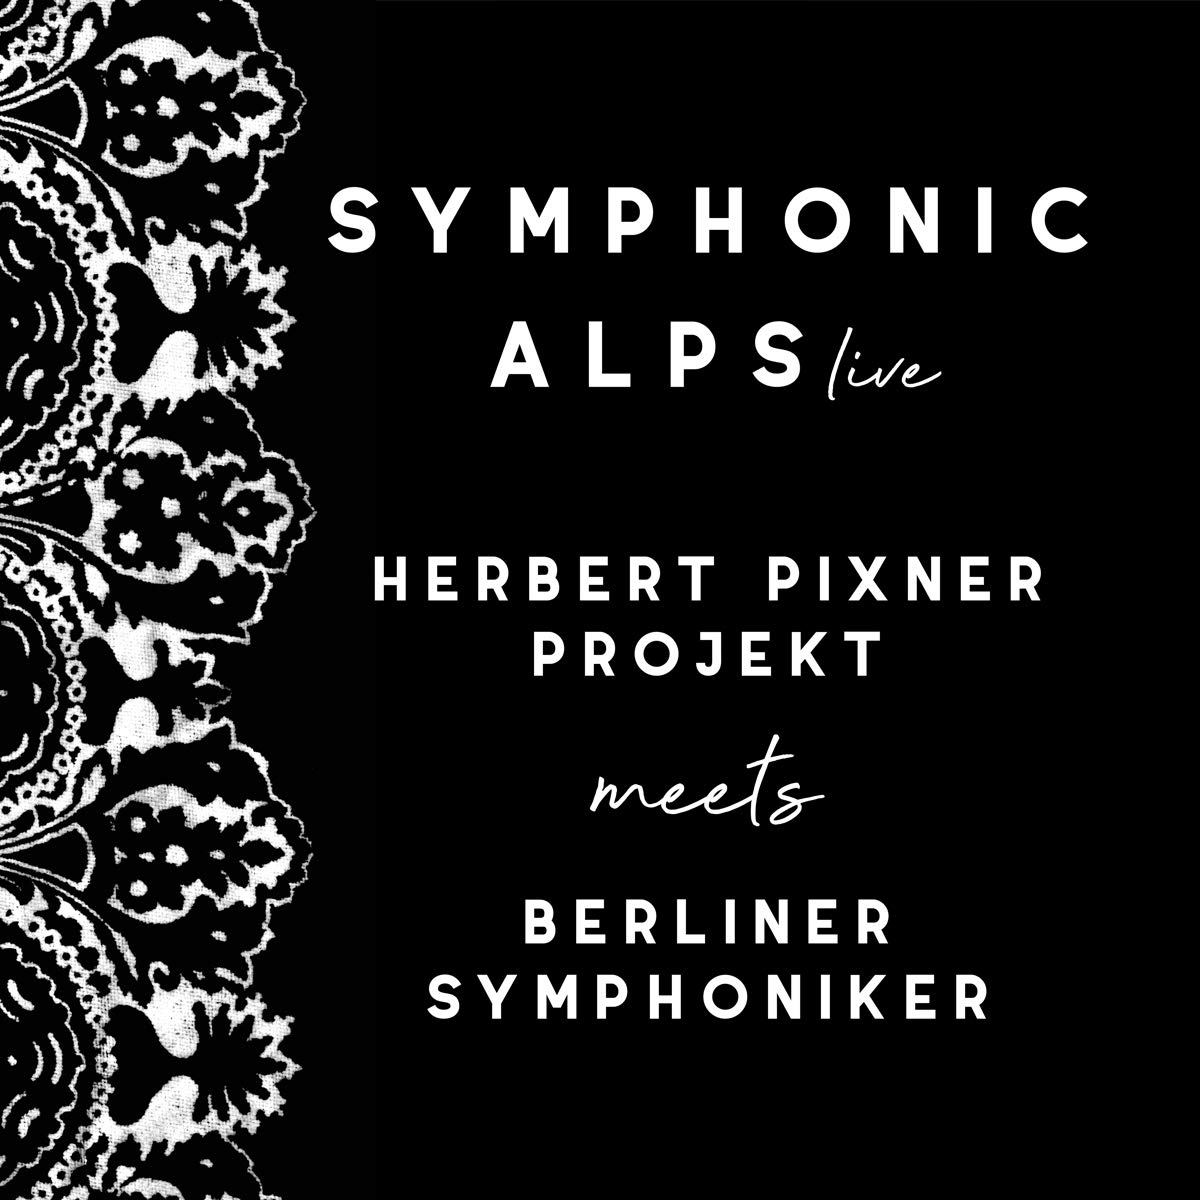 Audio Cd Herbert Pixner Project/ Berliner Sy - Symphonic Alps Live NUOVO SIGILLATO, EDIZIONE DEL 25/09/2020 SUBITO DISPONIBILE